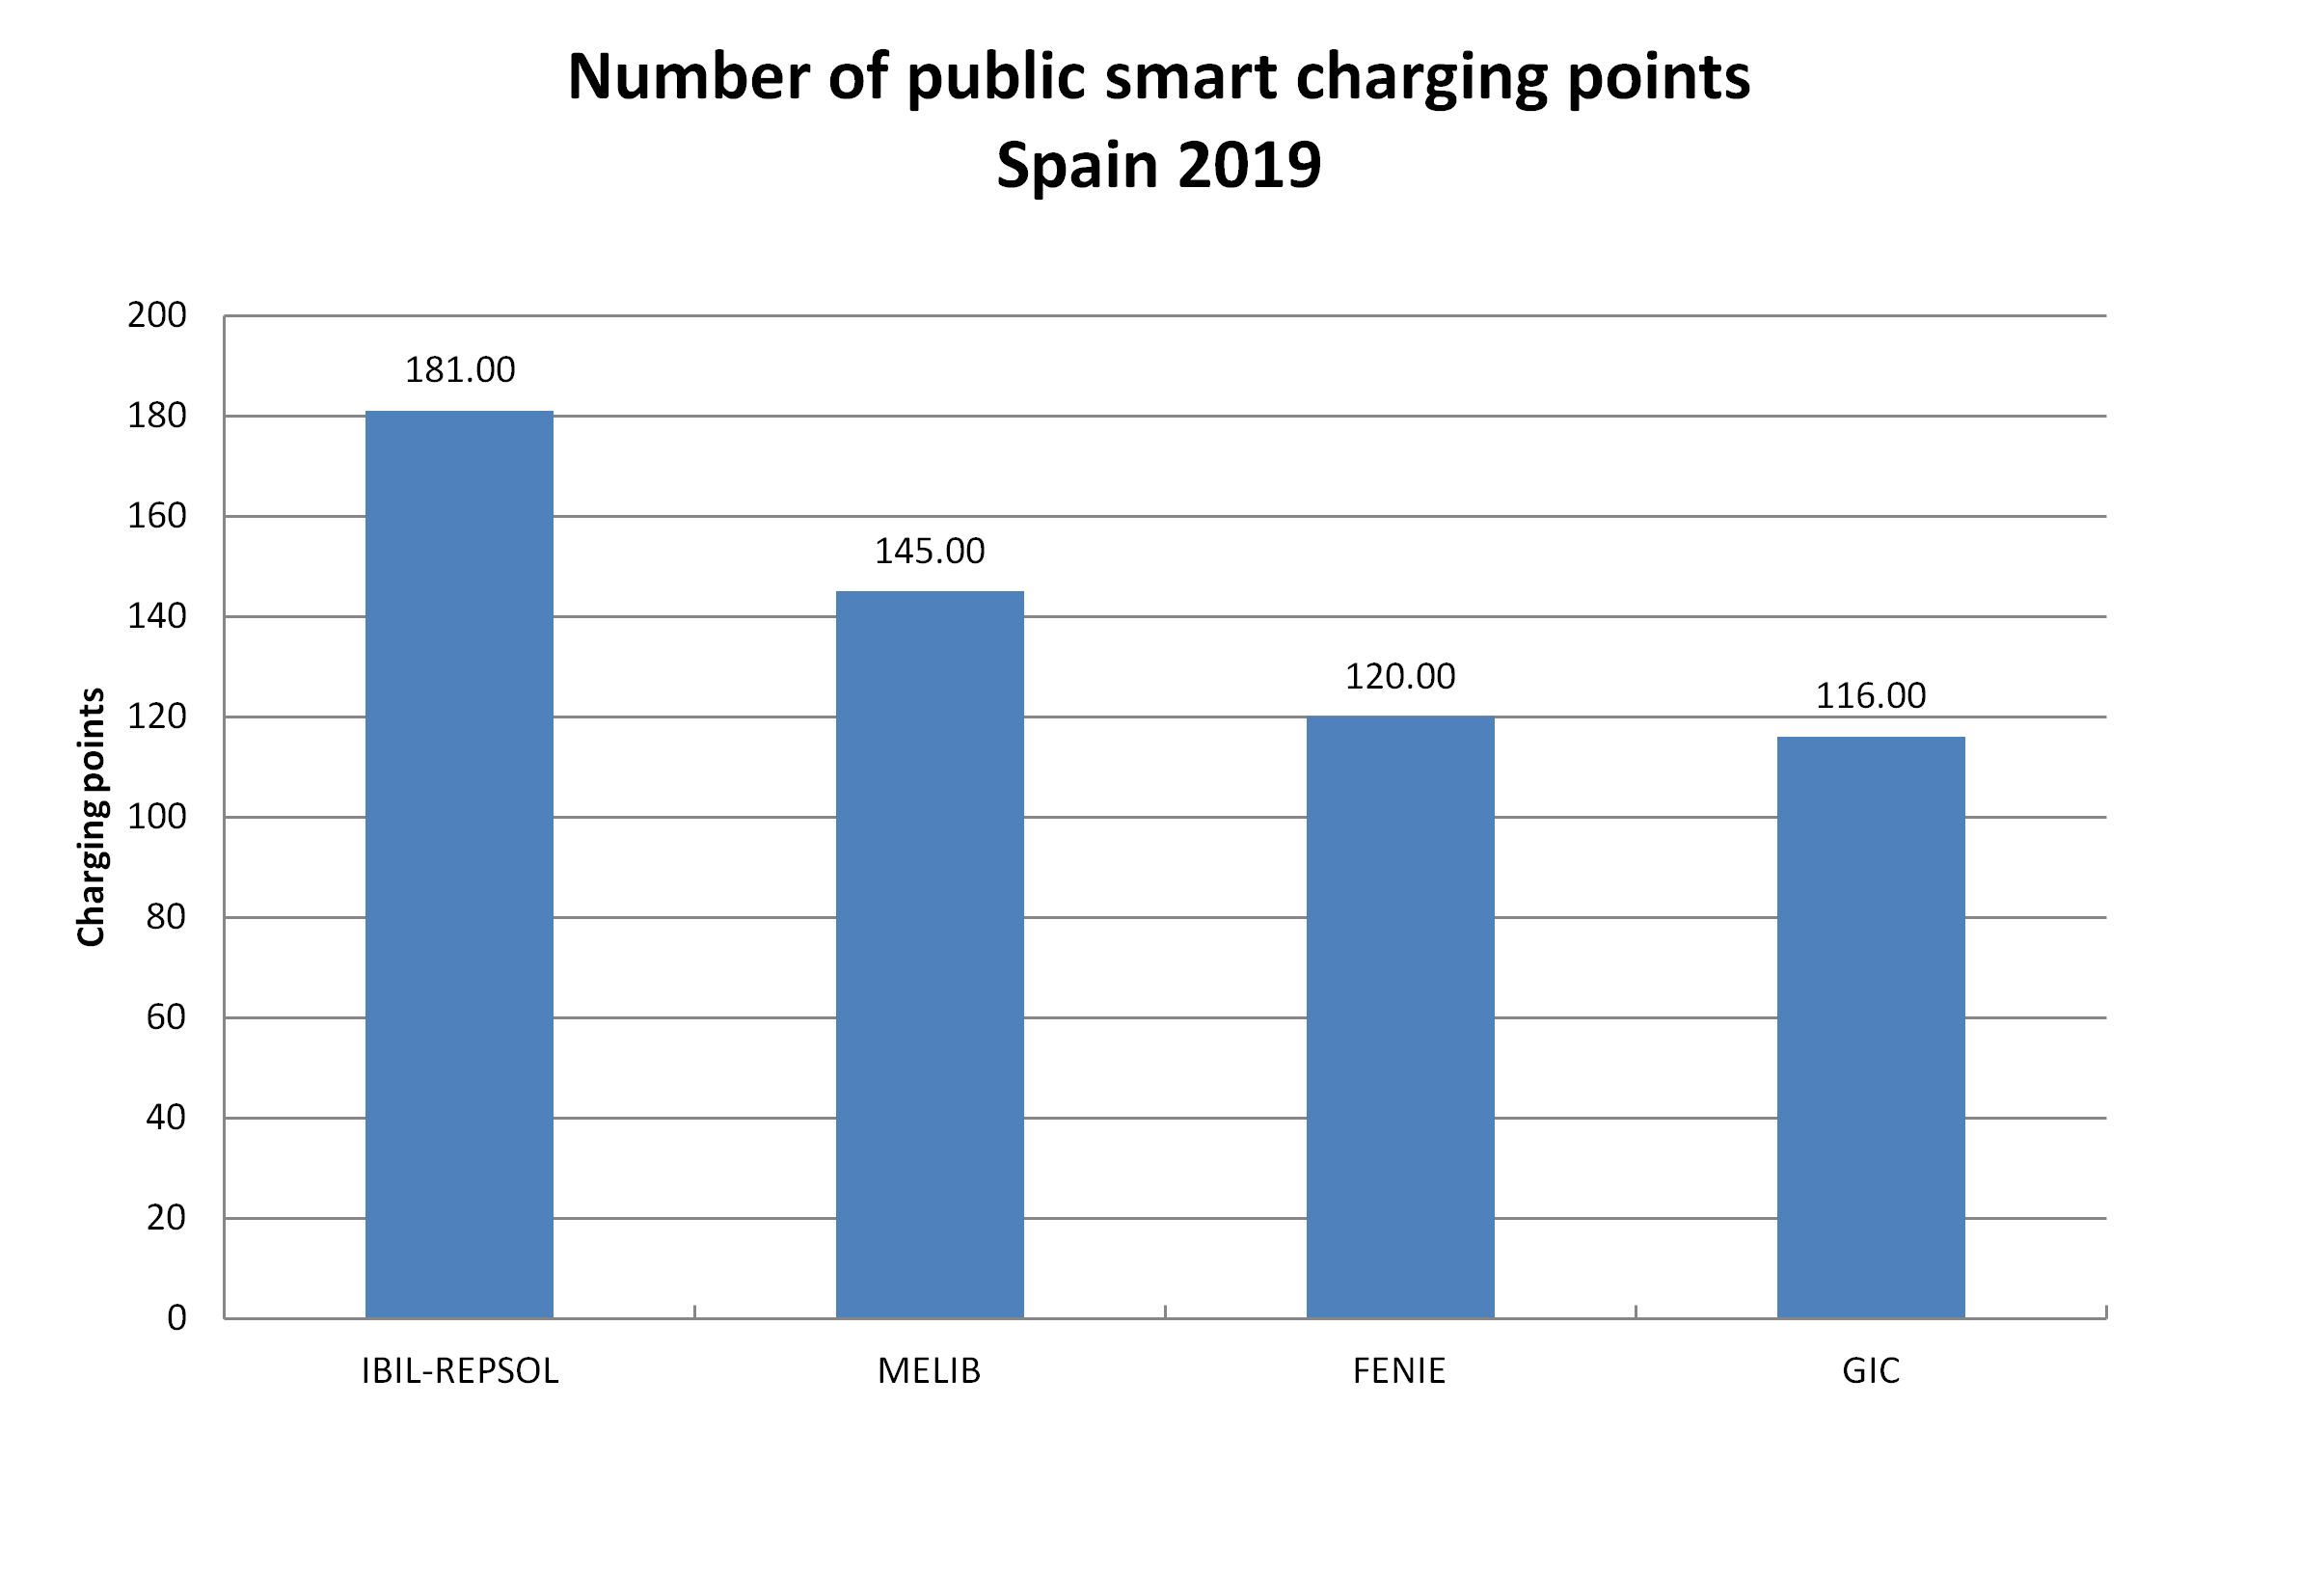 AleaSoft - Public charging points